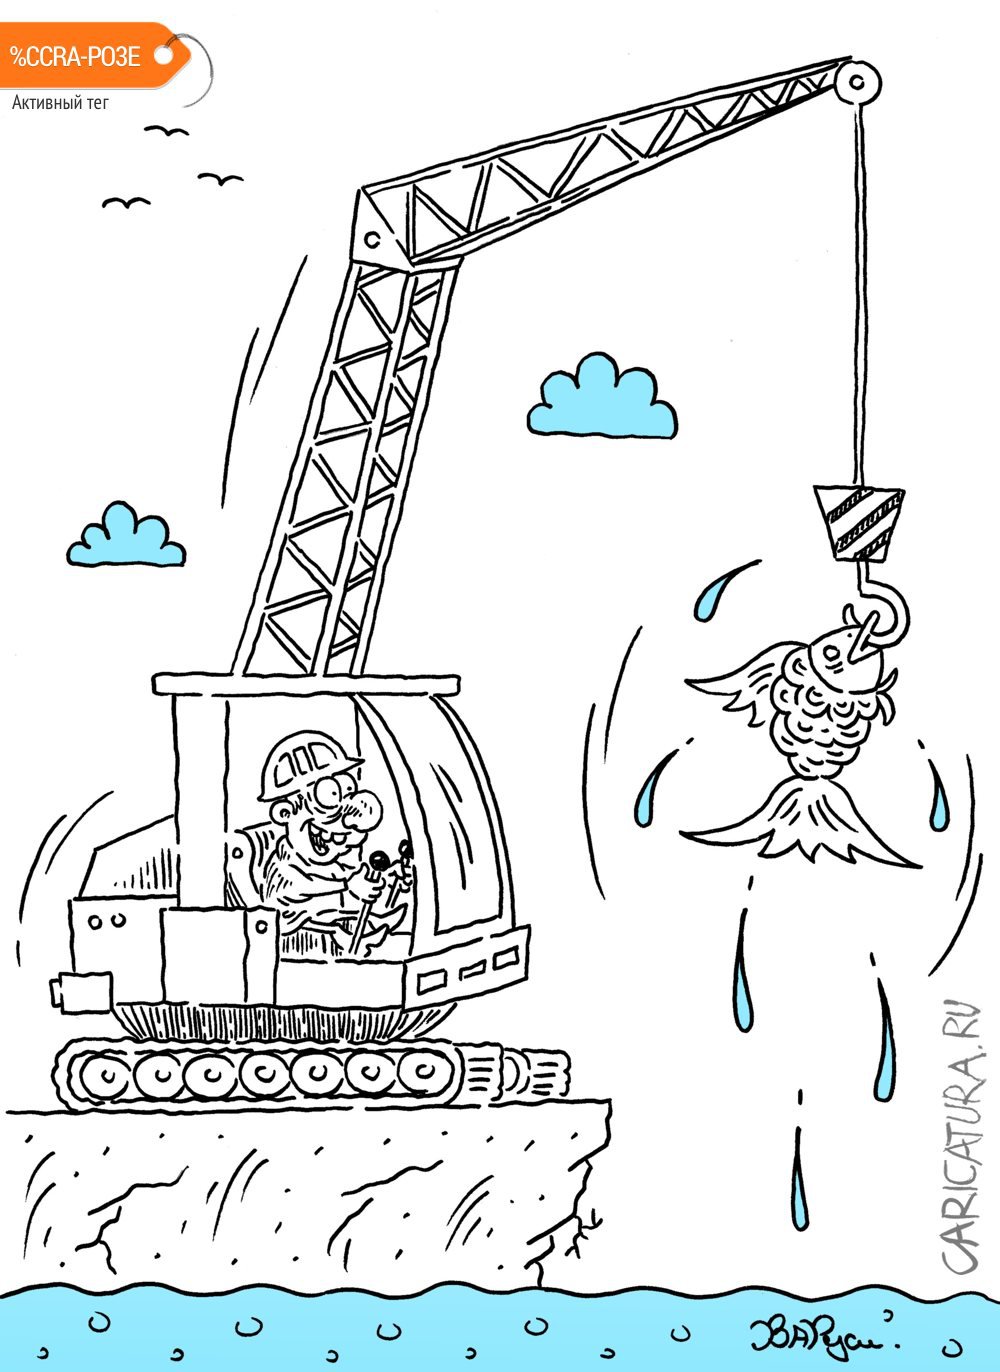 Карикатура "На рыбалке", Руслан Валитов